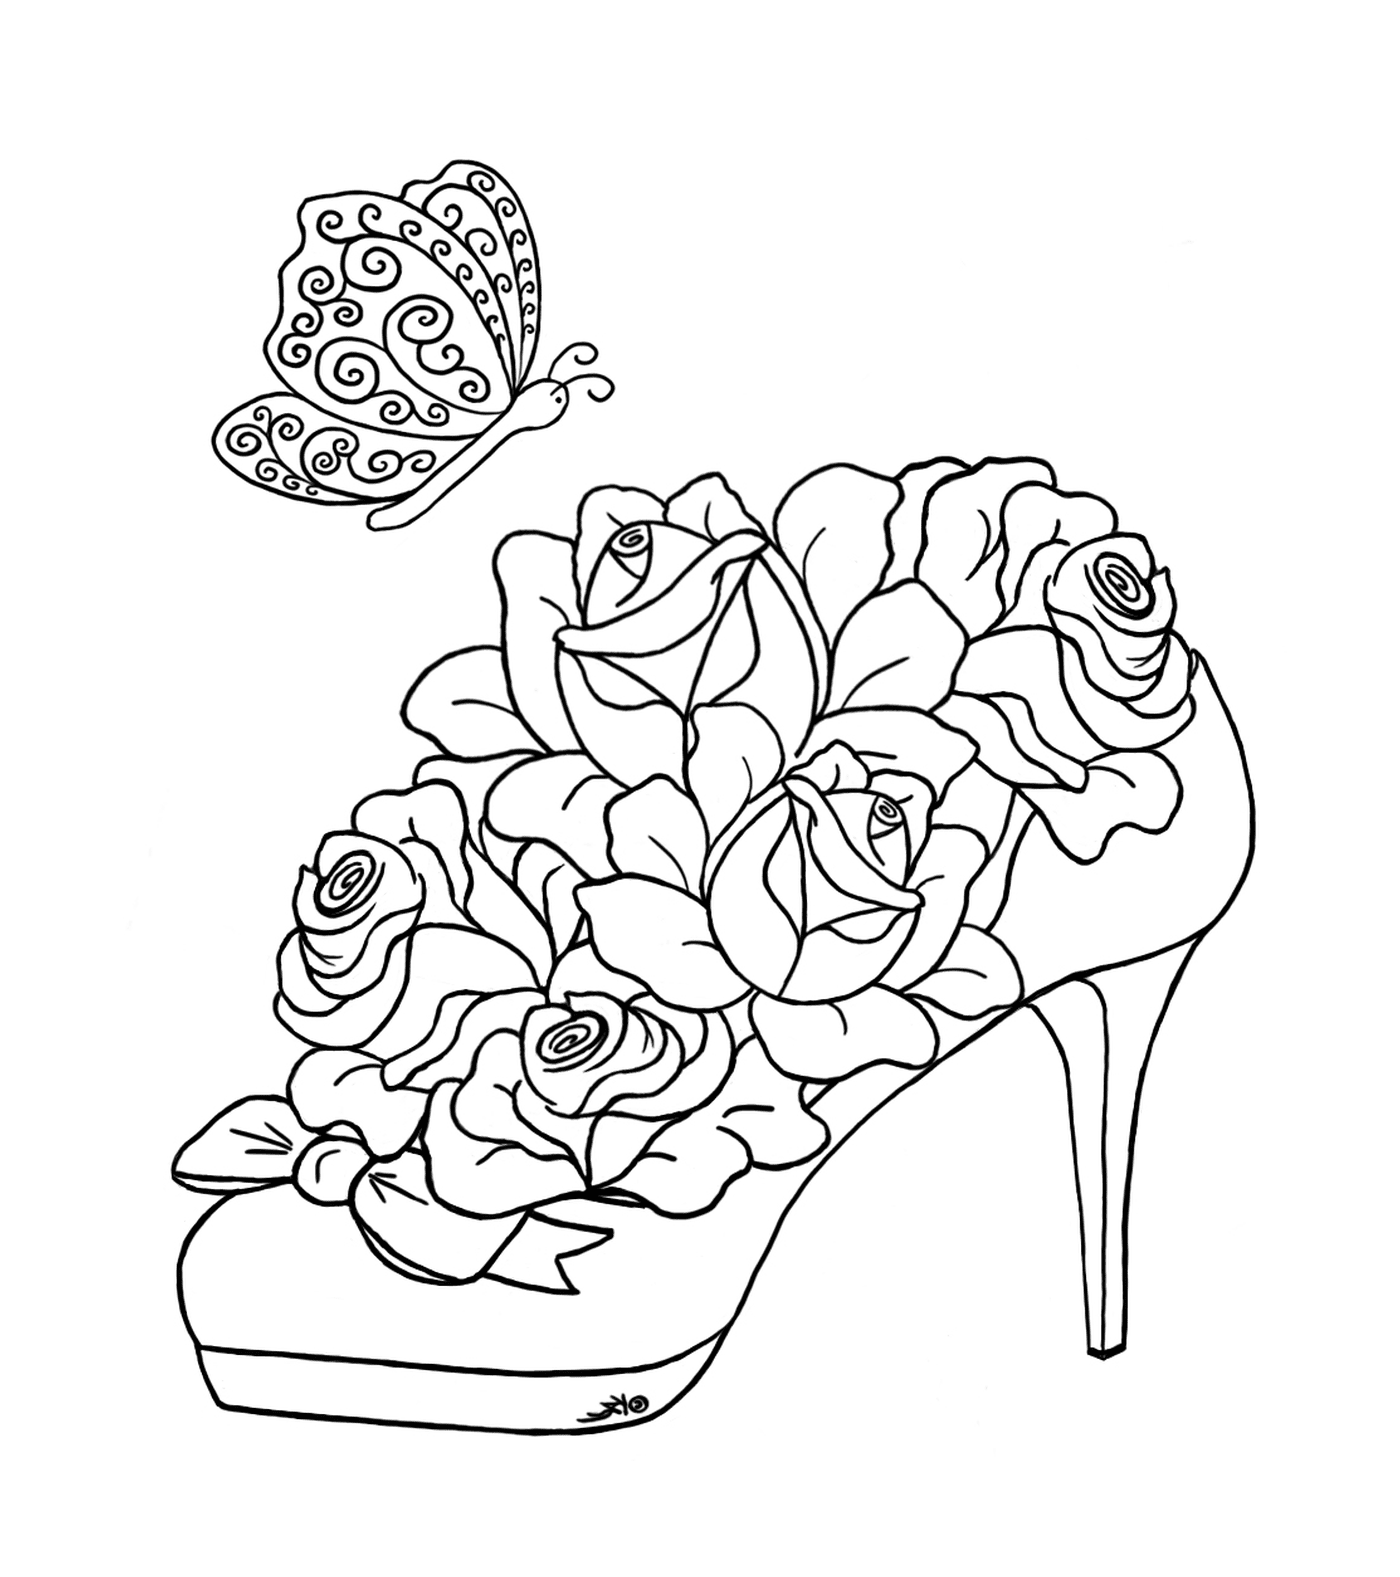  Обувь с декоративными розами 